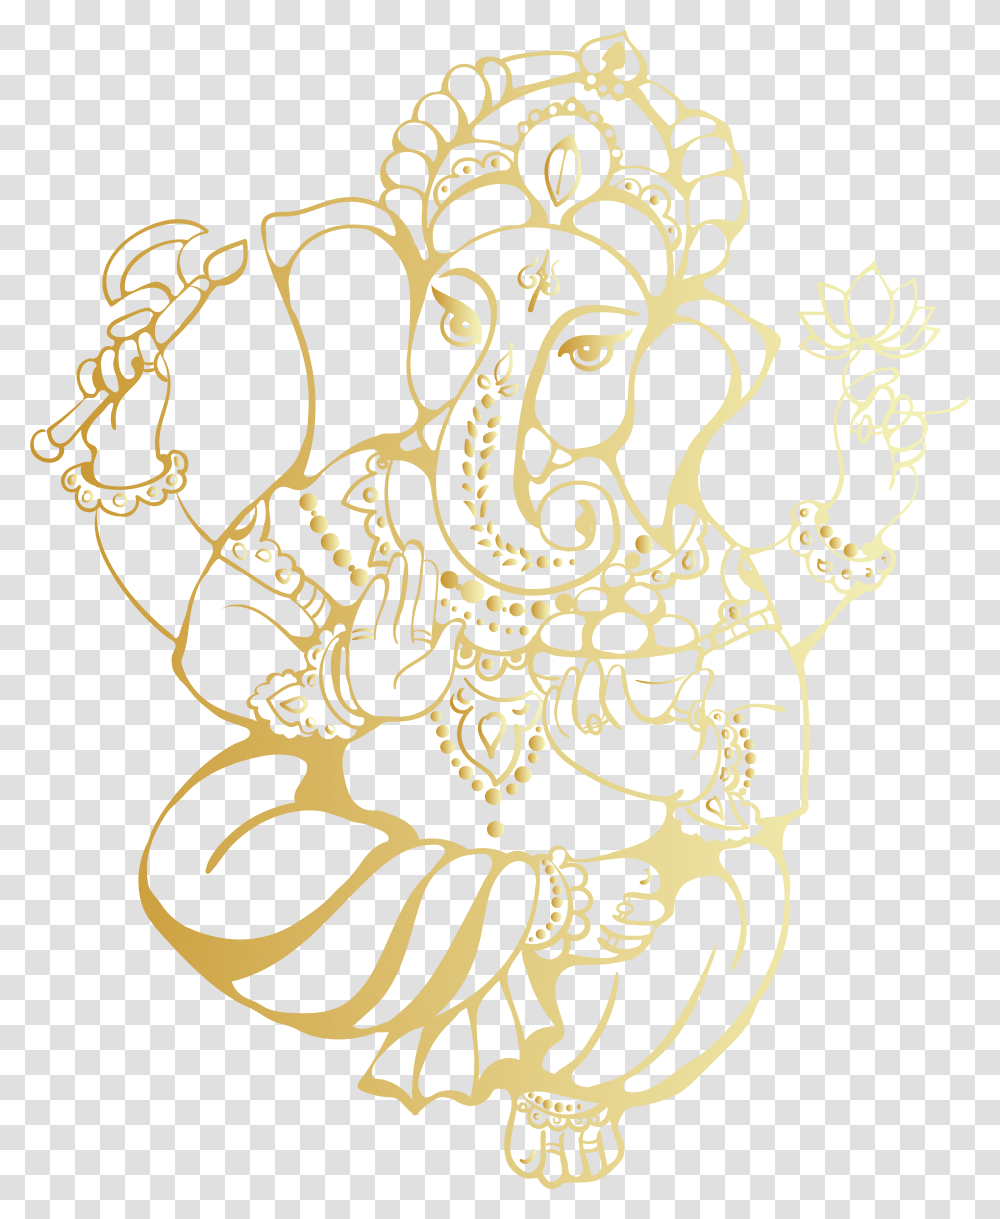 Ganesh Images For Wedding Cards, Floral Design, Pattern Transparent Png